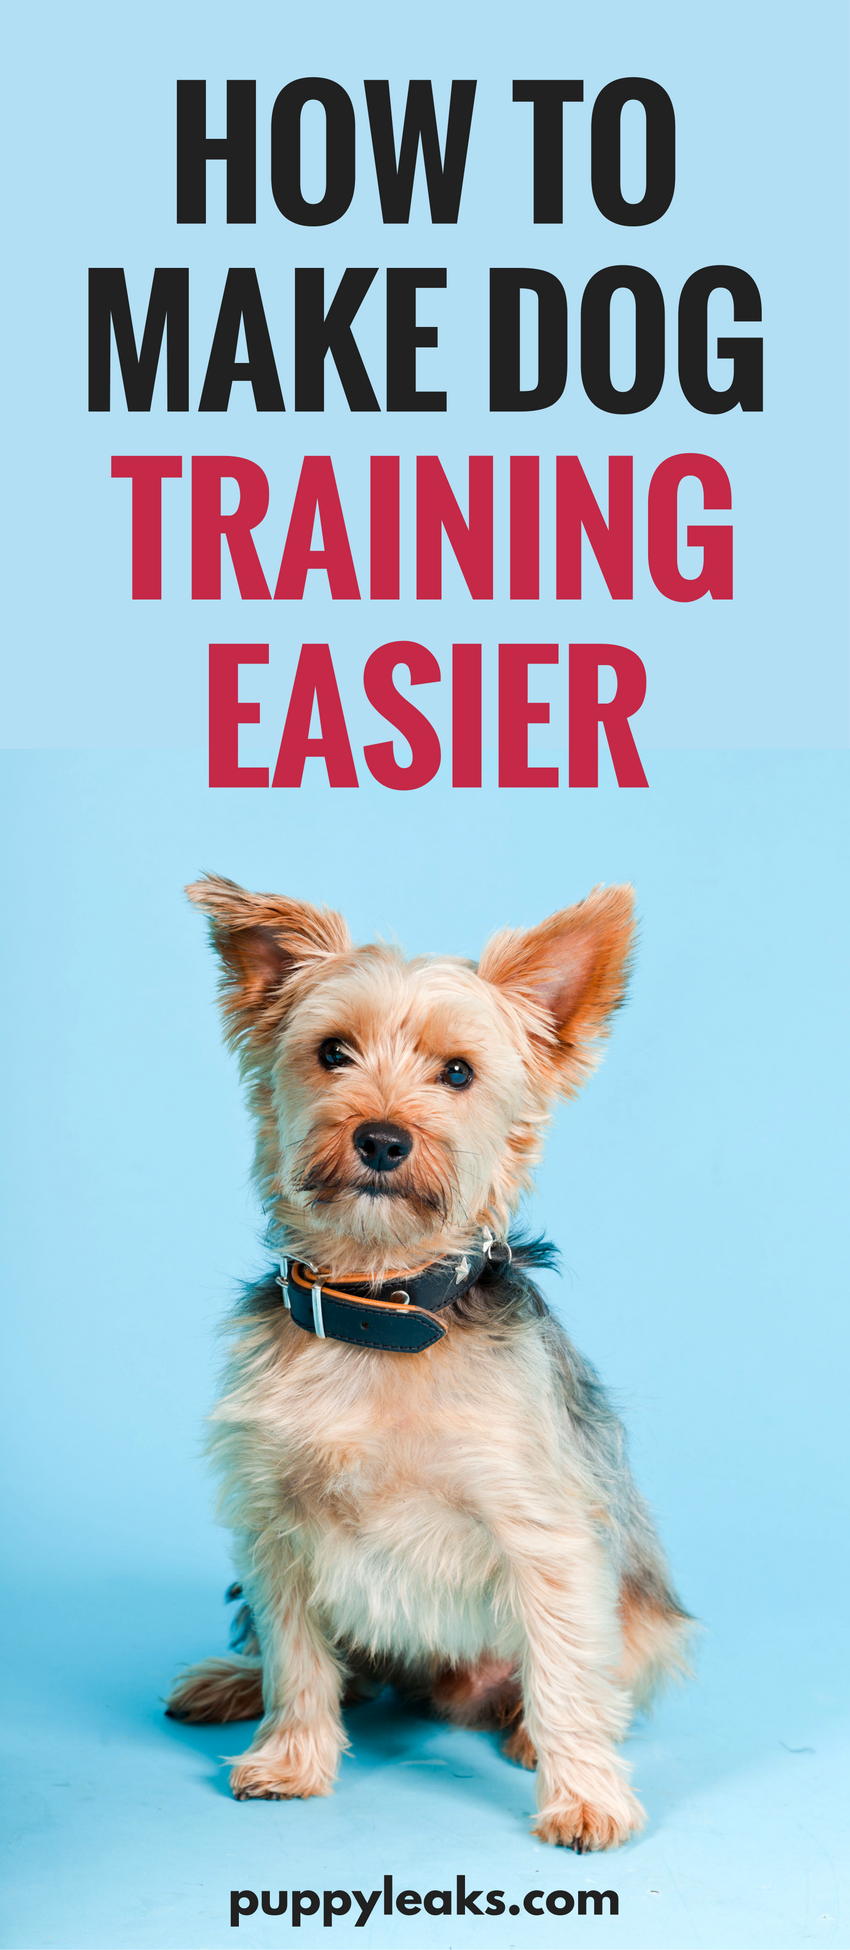 10 tips die het trainen van honden gemakkelijker maken